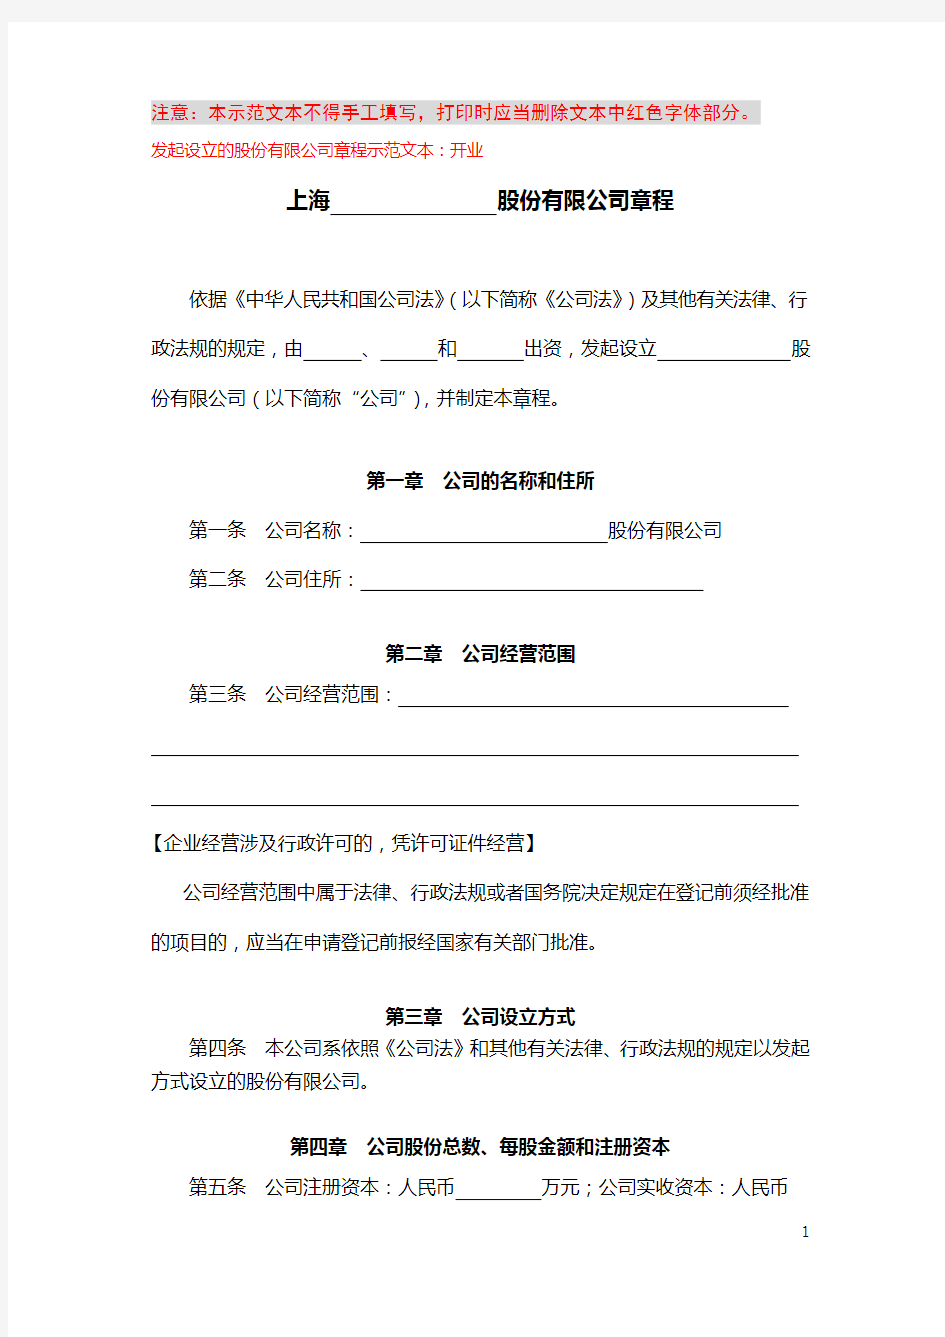 上海市工商局股份公司章程范例